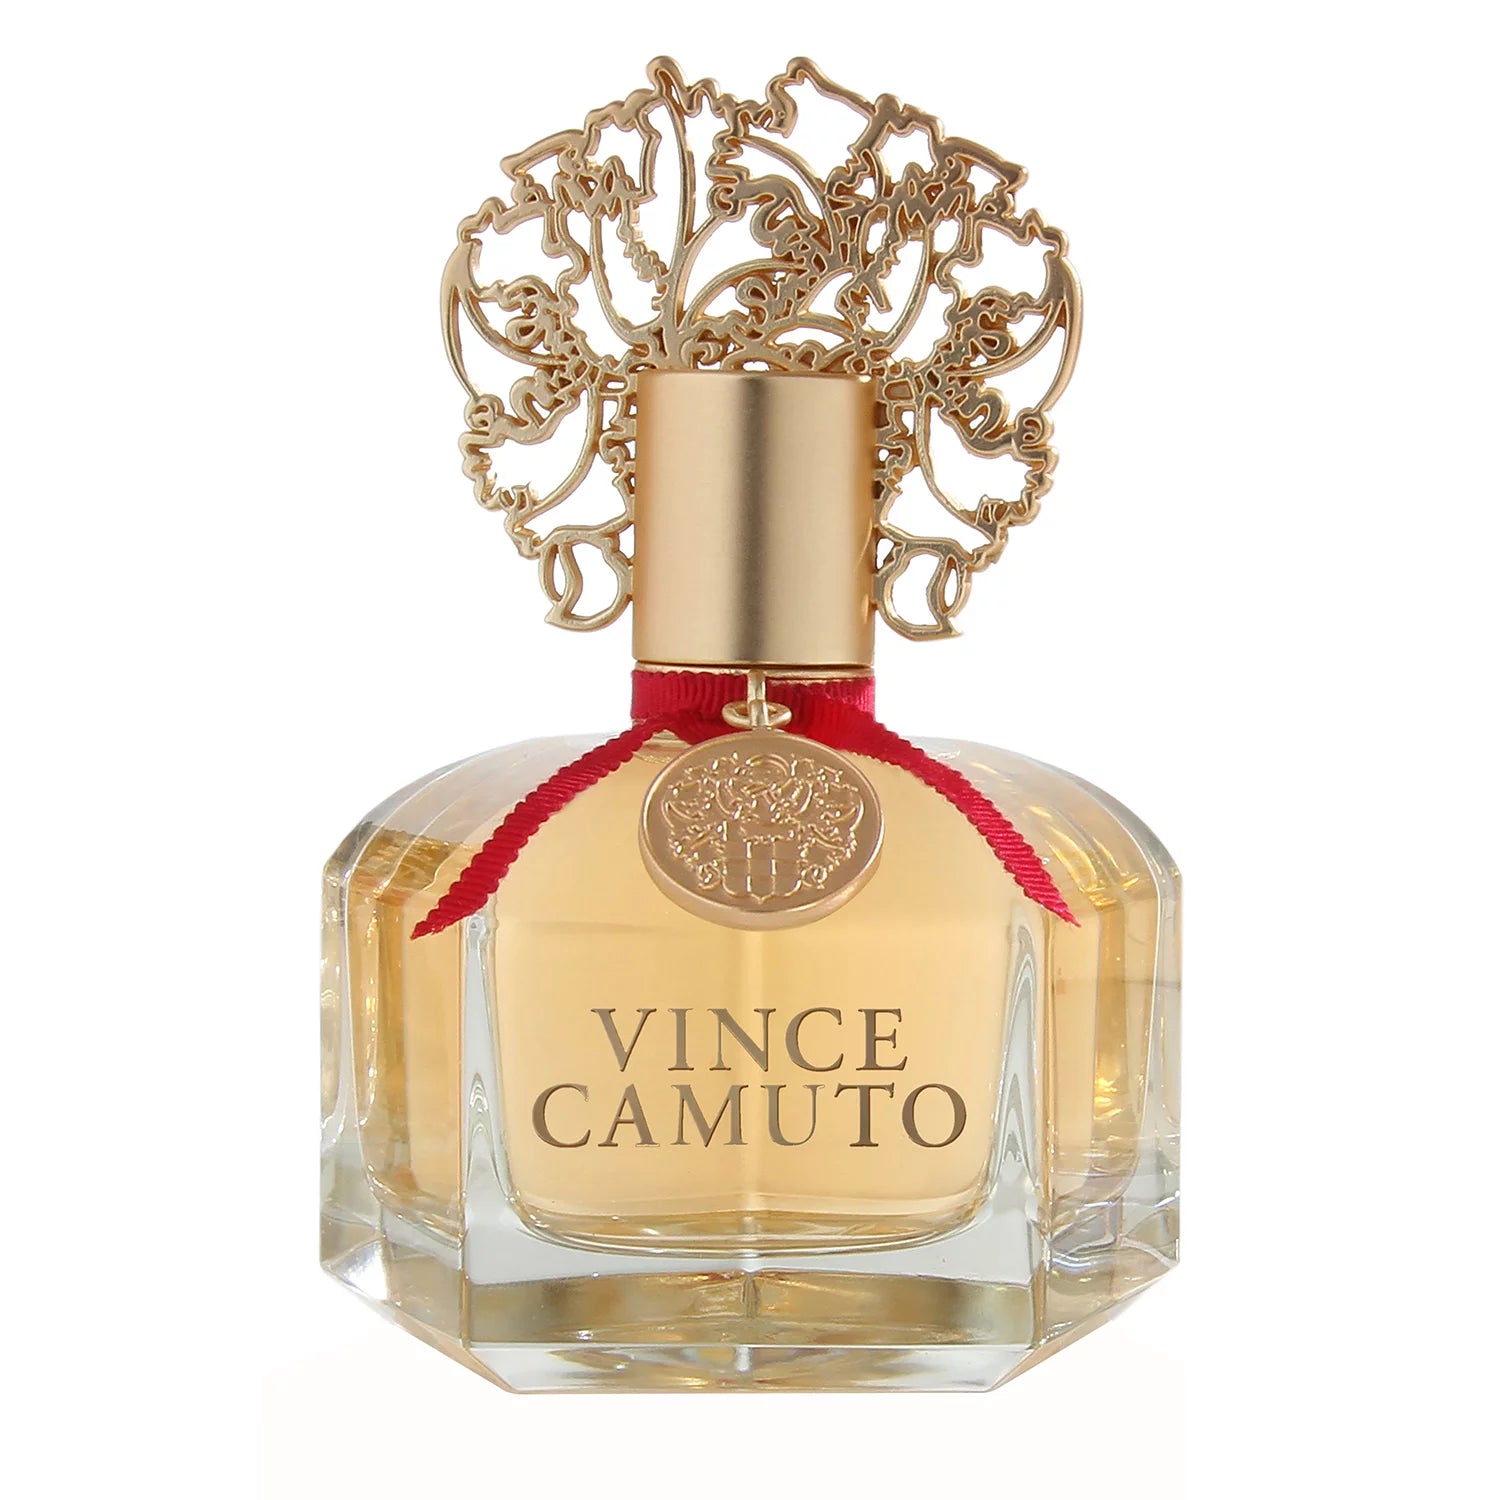 Vince Camuto 255292 Amore Vince Camuto Limited Edition Eau De